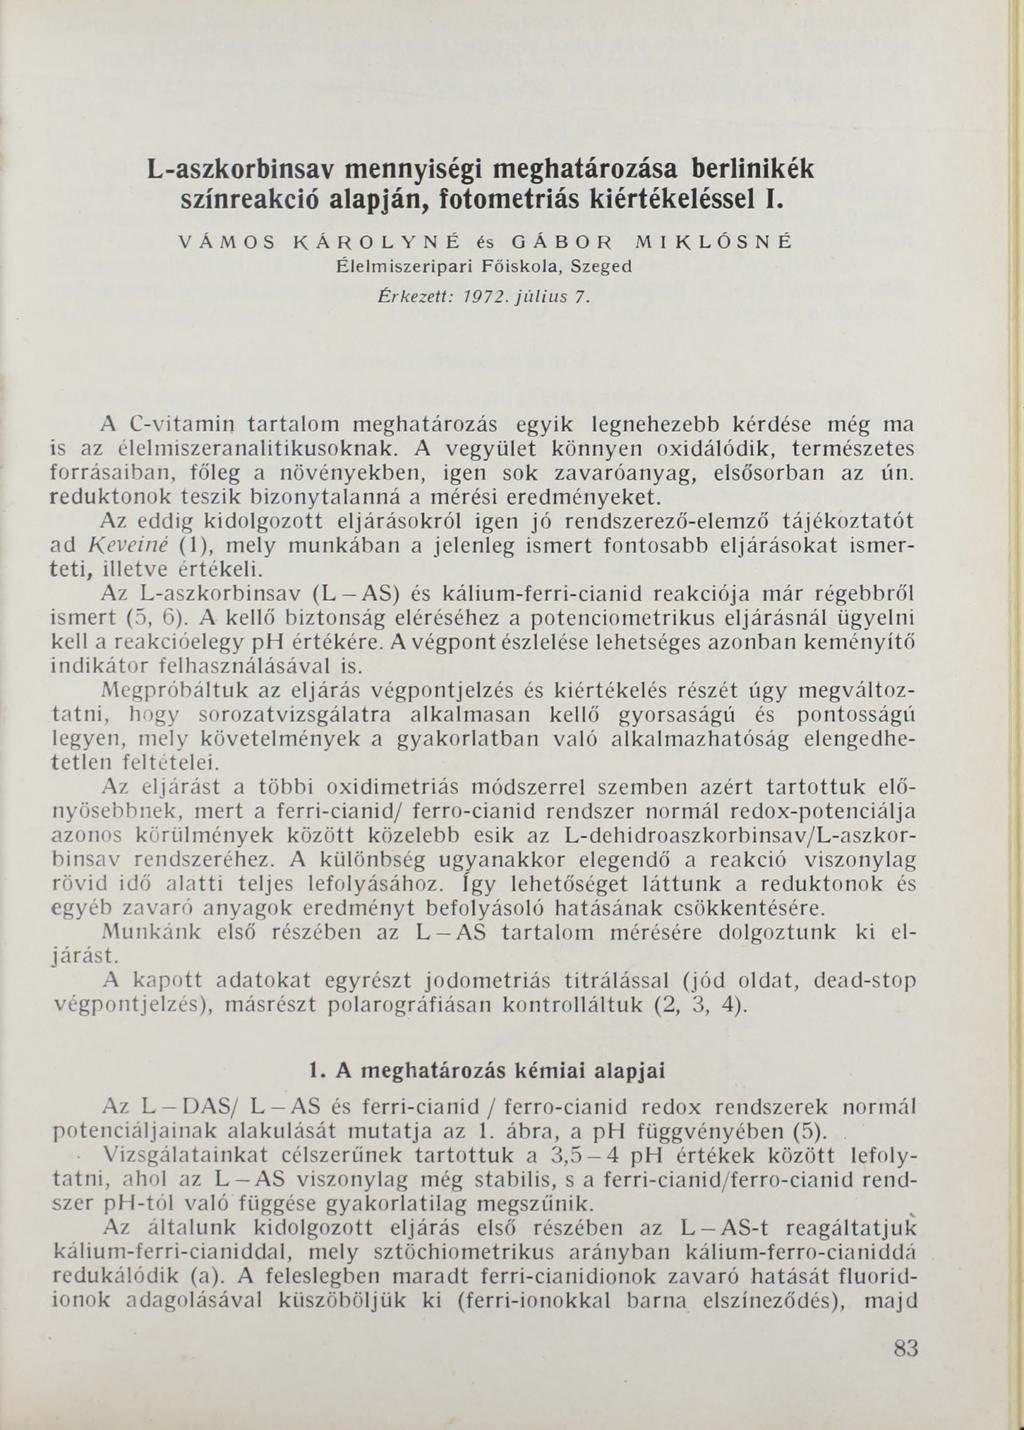 L-aszkorbinsav mennyiségi meghatározása berlinikék színreakció alapján, fotometriás kiértékeléssel I. VÁMOS KÁROLYNÉ és GÁBOR MIKLÓSNÉ Élelm iszeripari Főiskola, Szeged Érkezett: 1972. jú liu s 7.